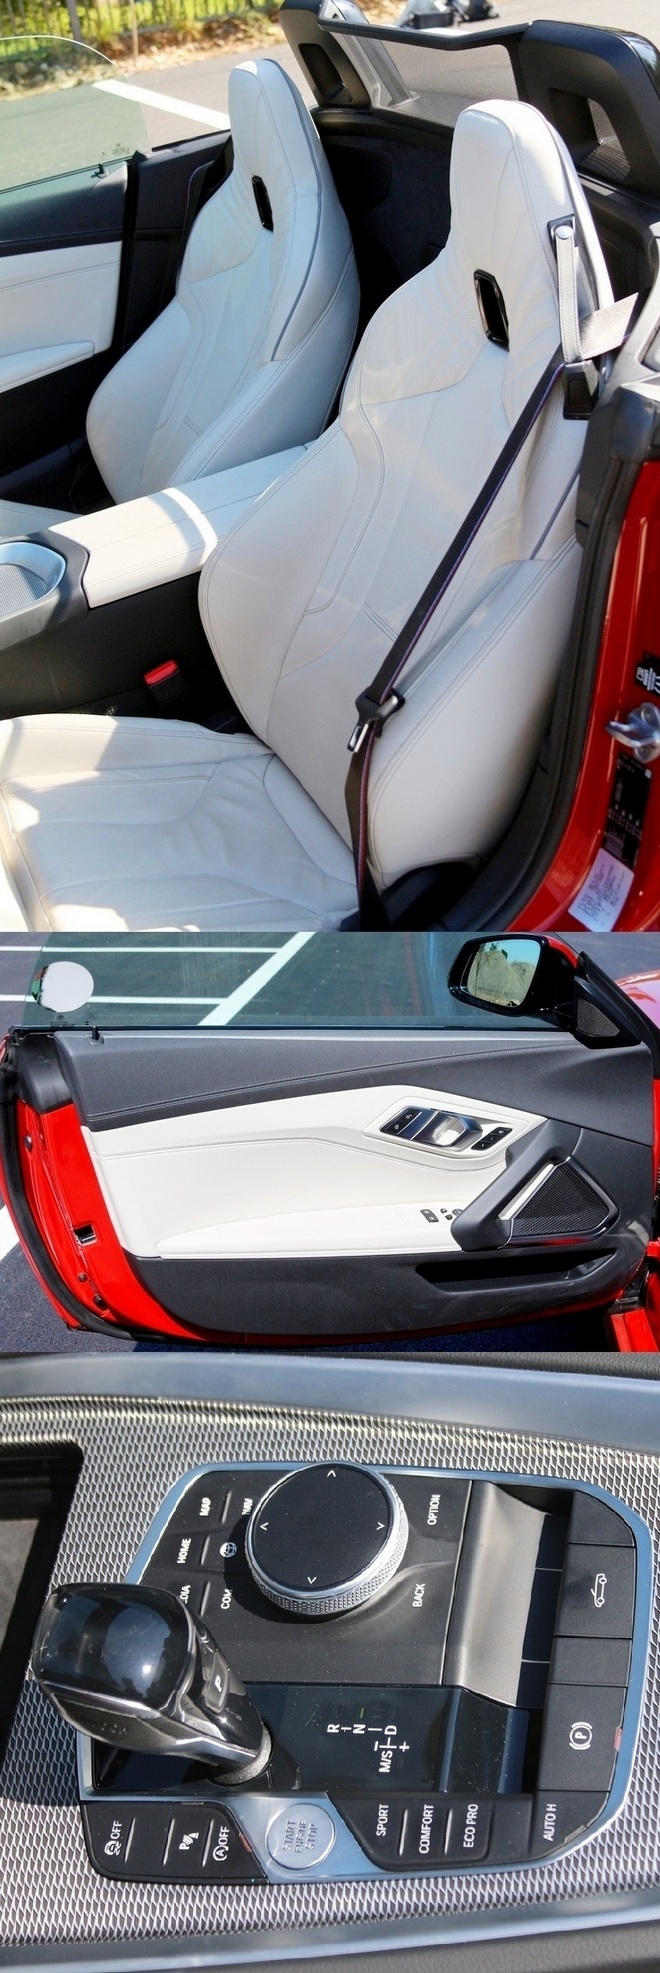 Z4에는 BMW 최초의 일체형 시트가 실렸다. 하얀색 시트는 실내에 깔끔하고 세련된 이미지를 제공하고, 차량 조작은 조그셔틀로도 가능하다. 사진=글로벌 이코노믹 정수남 기자